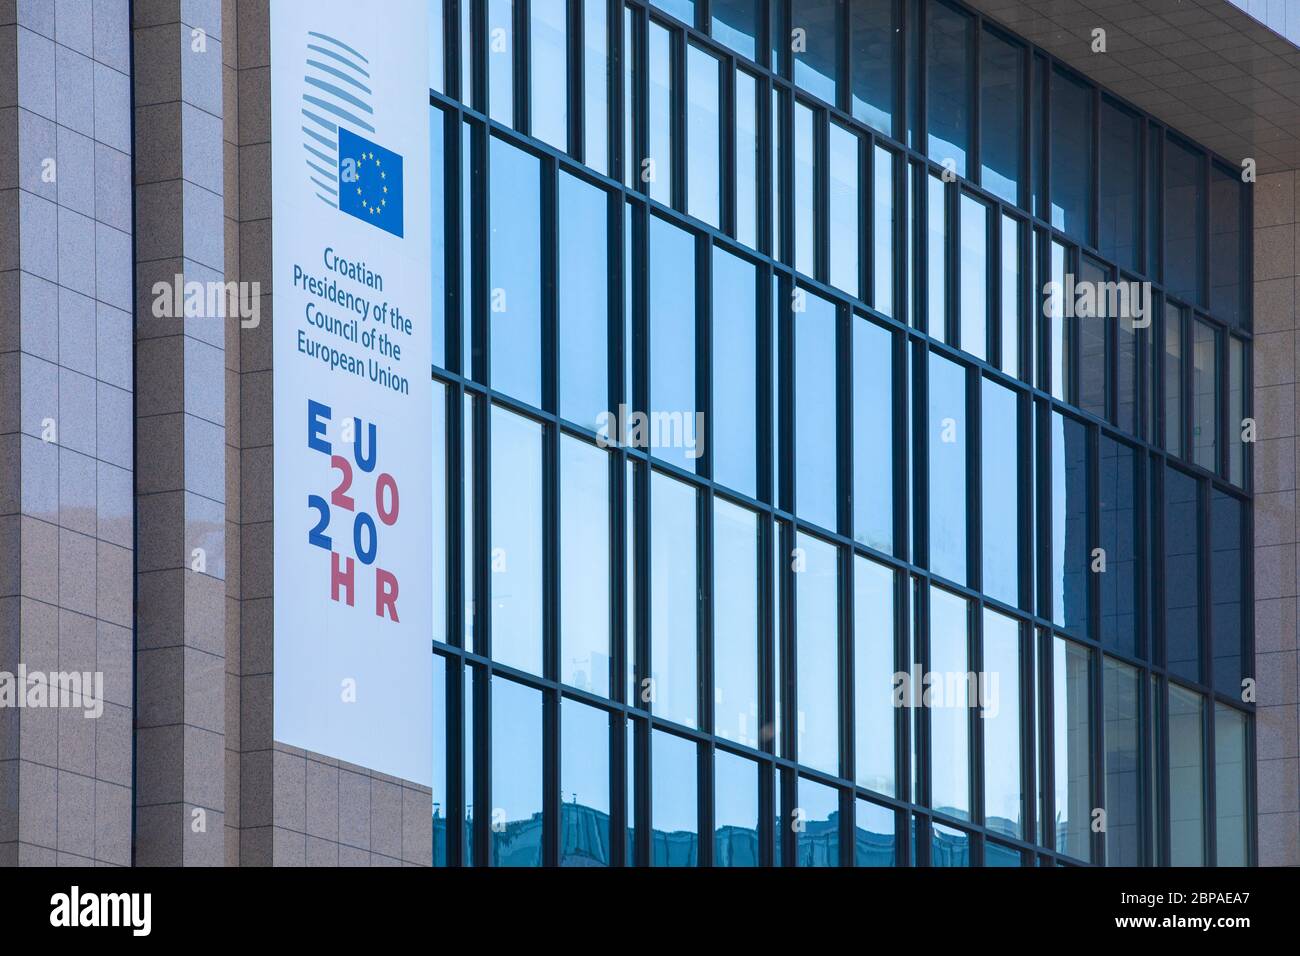 BRUXELLES, Belgique - quatrième de mai 2020 : bannière de la présidence tournante de la croatie à la tête du conseil européen Banque D'Images